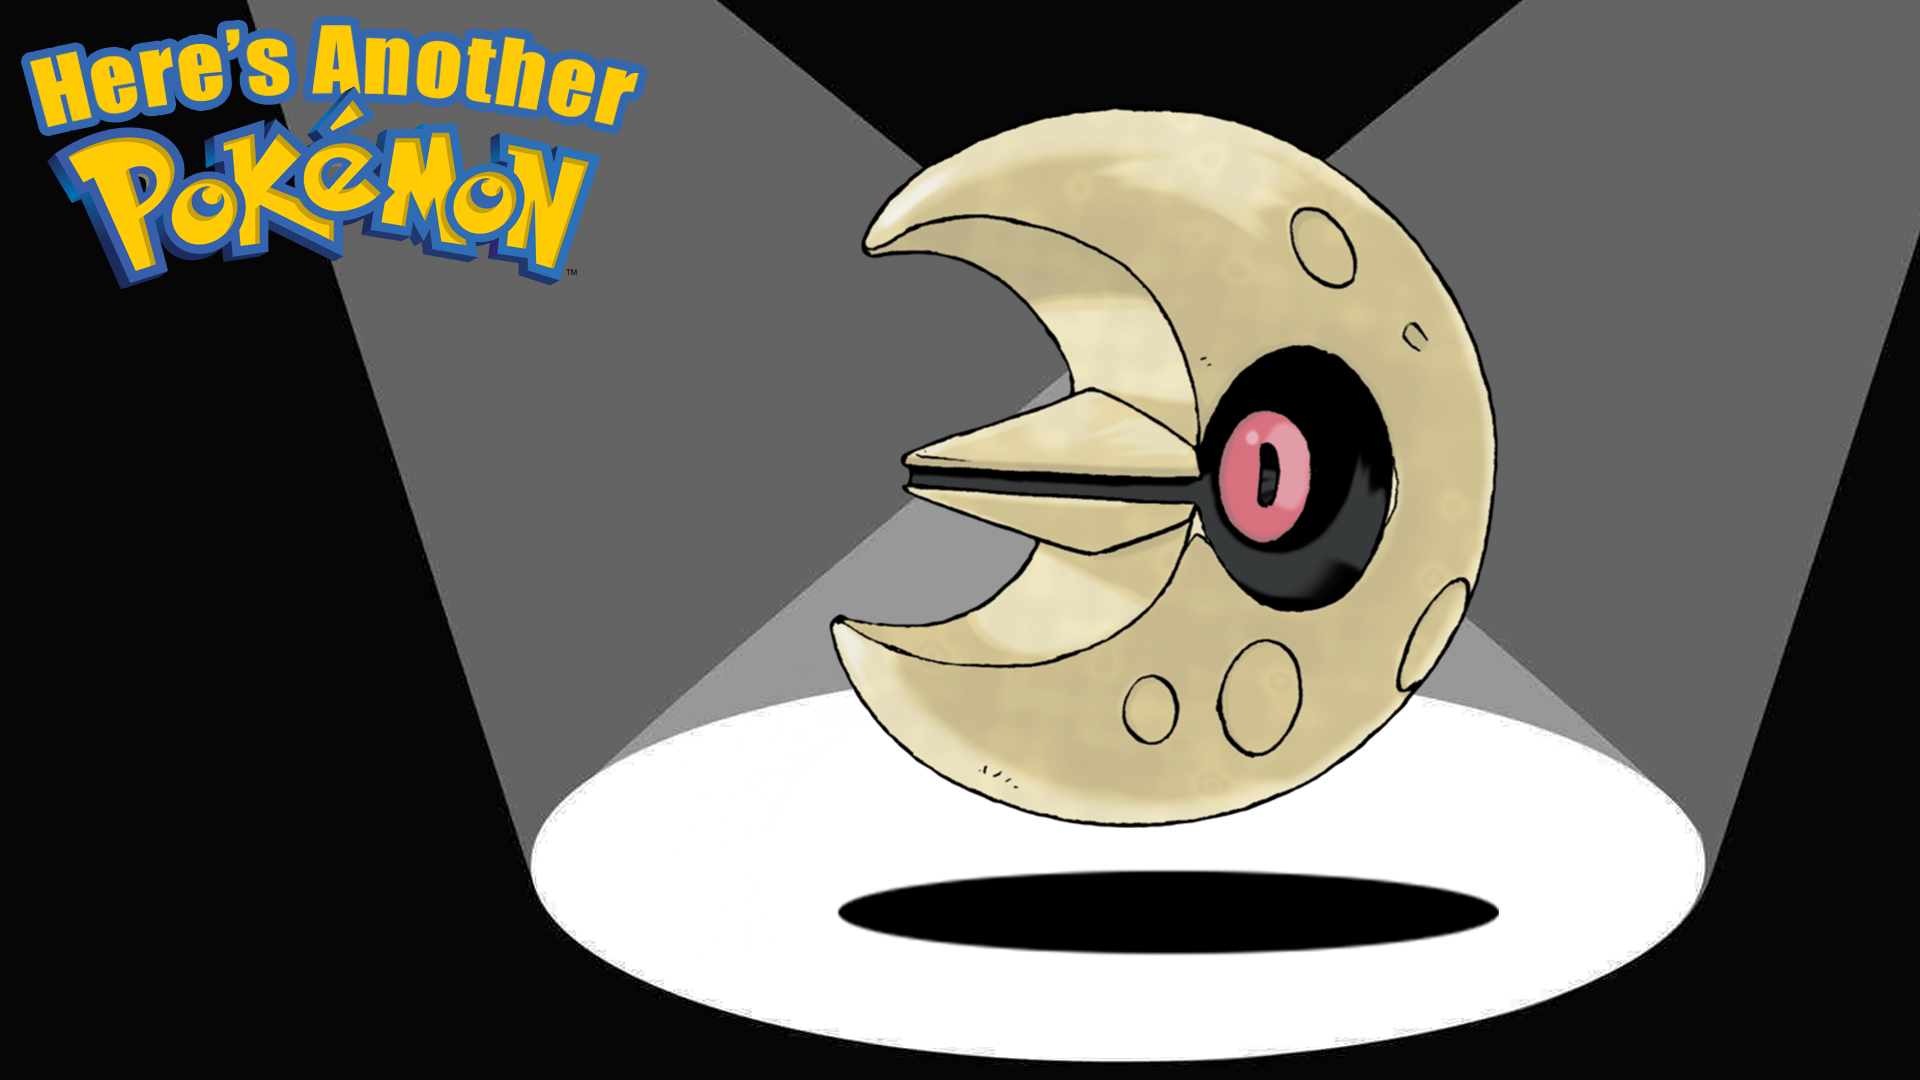 Can Lunala be Shiny in Pokémon Go? - Dot Esports